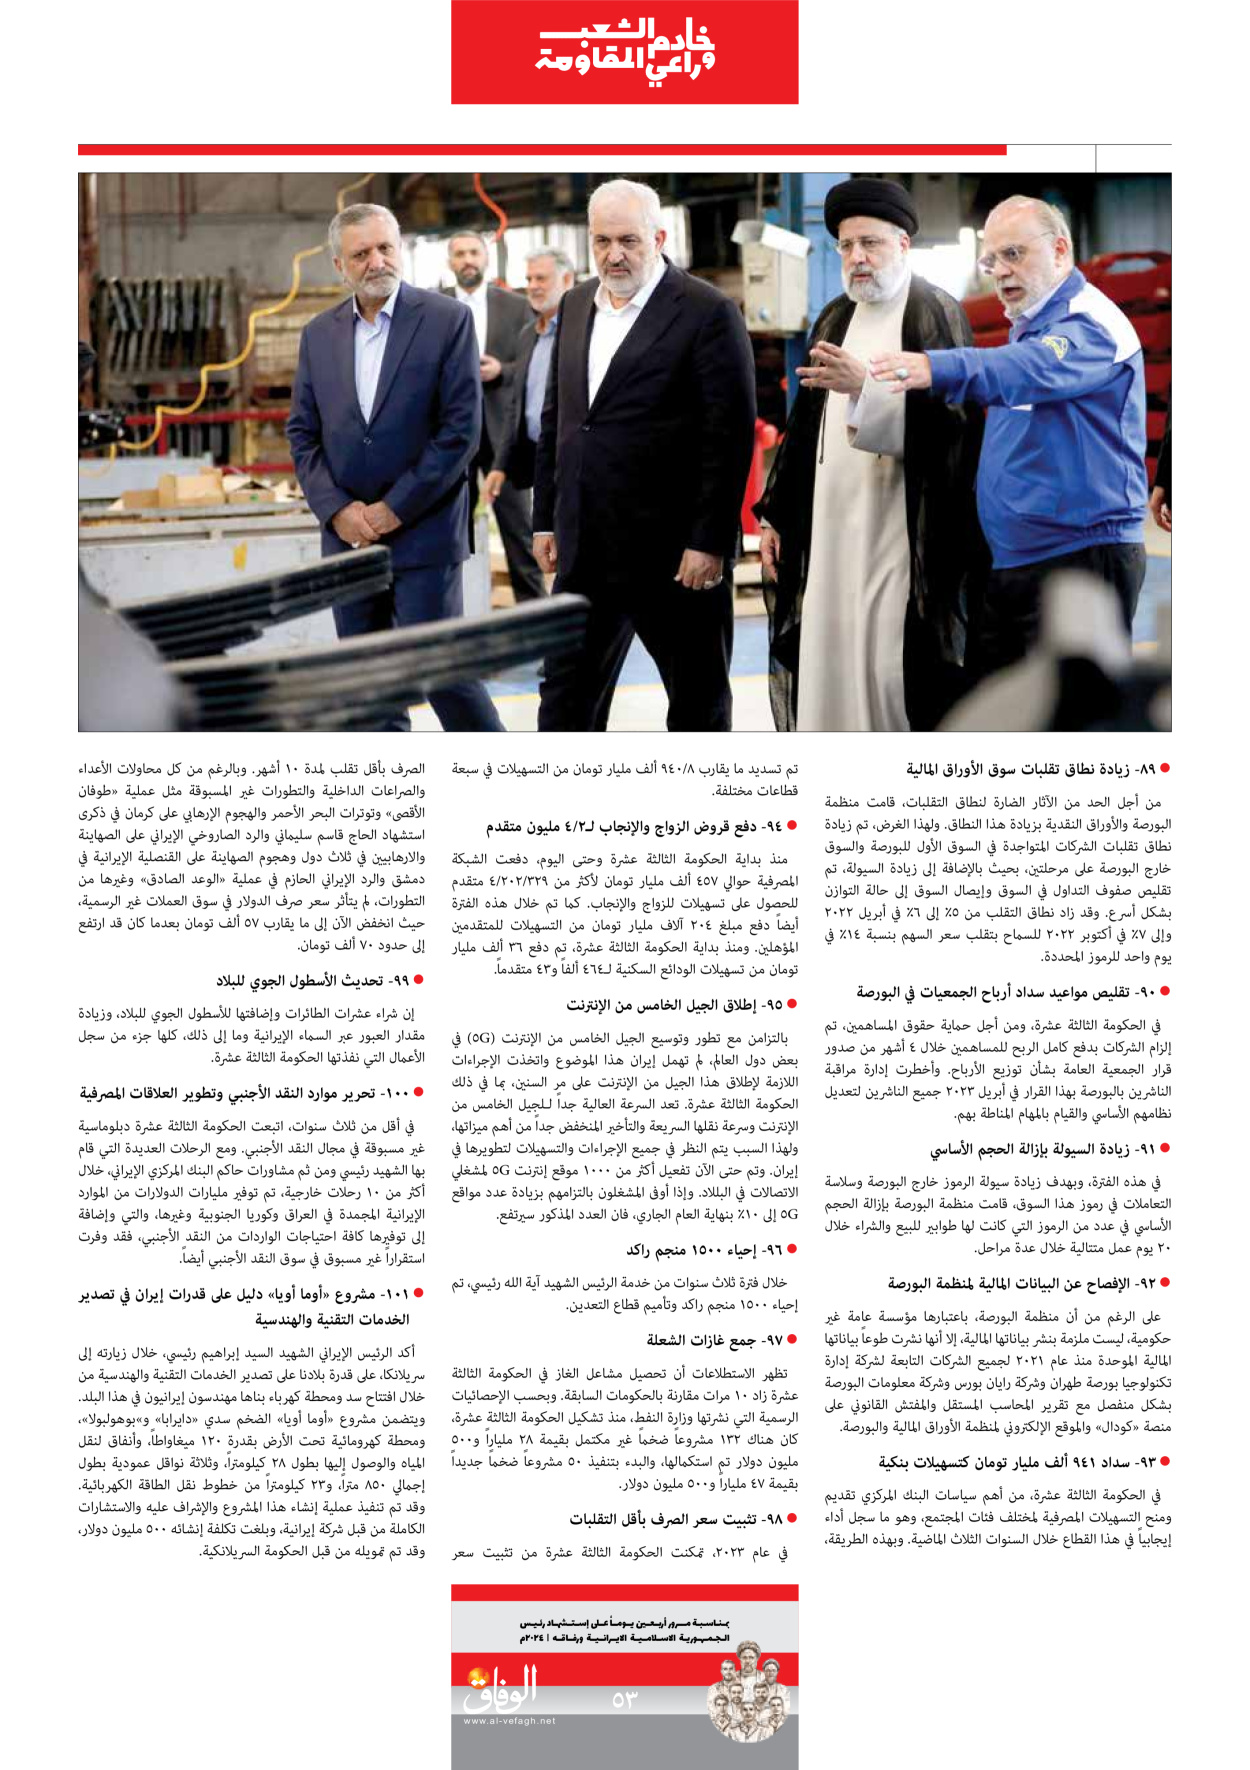 صحیفة ایران الدولیة الوفاق - ملحق ویژه نامه چهلم شهید رییسی - ٢٩ يونيو ٢٠٢٤ - الصفحة ٥۳